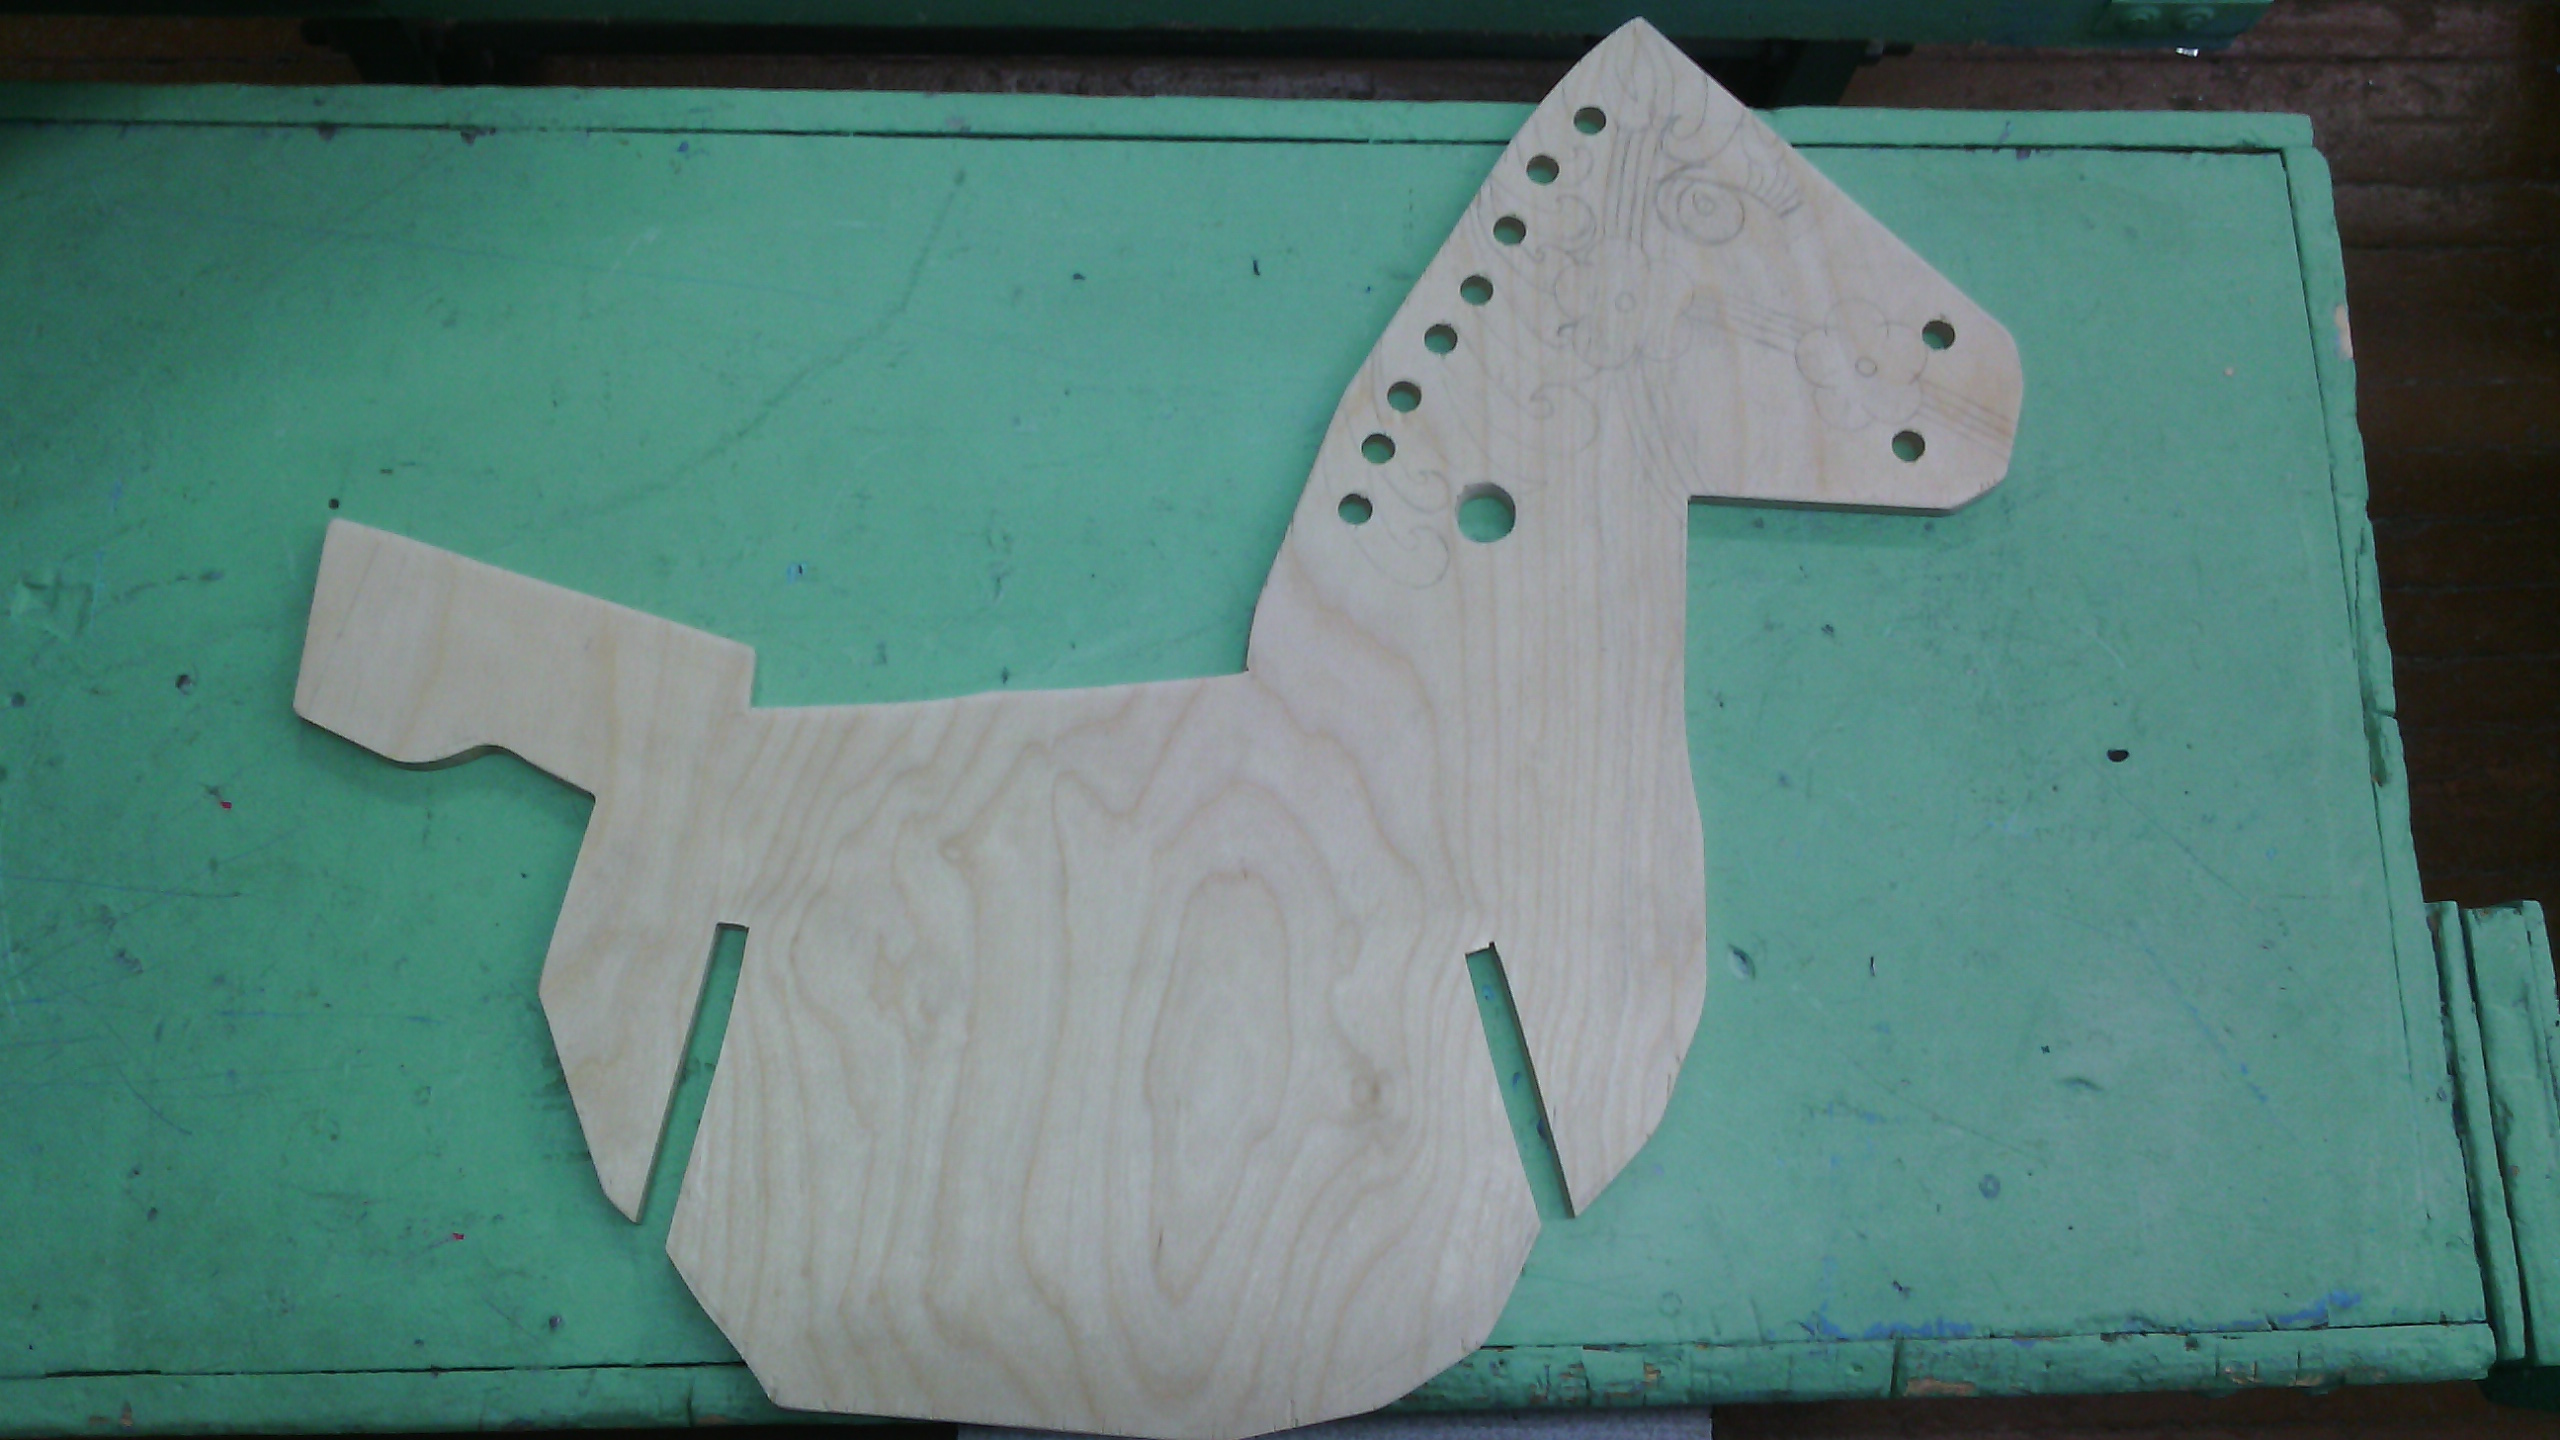 Творческий проект: Разработка и изготовление детской игрушки: лошадка-качалка.